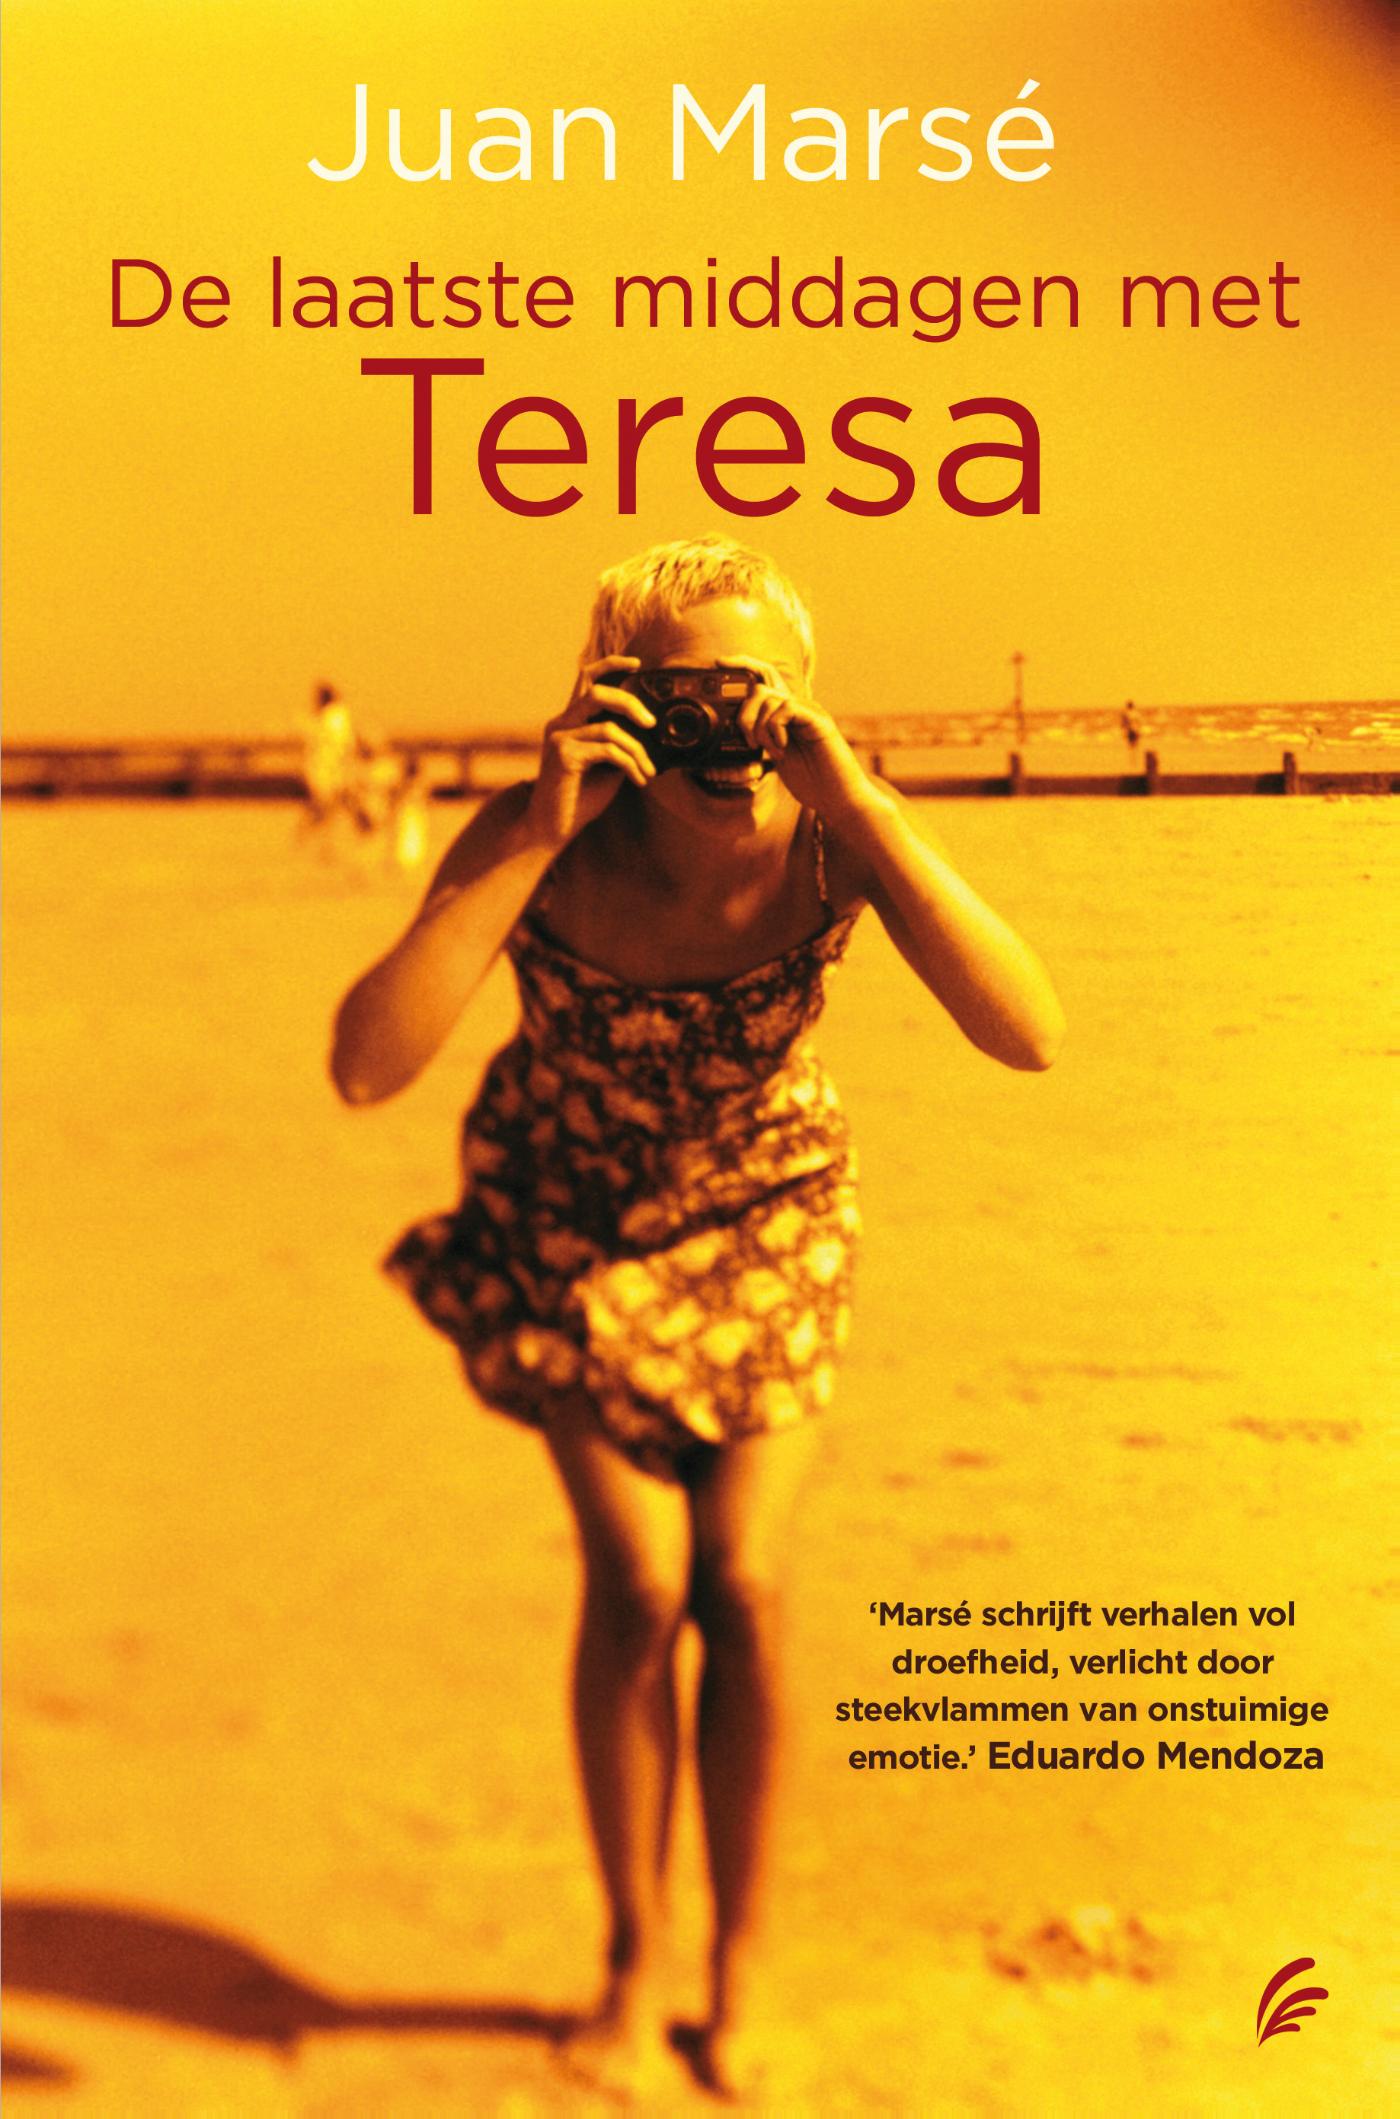 De laatste middagen met Teresa (Ebook)